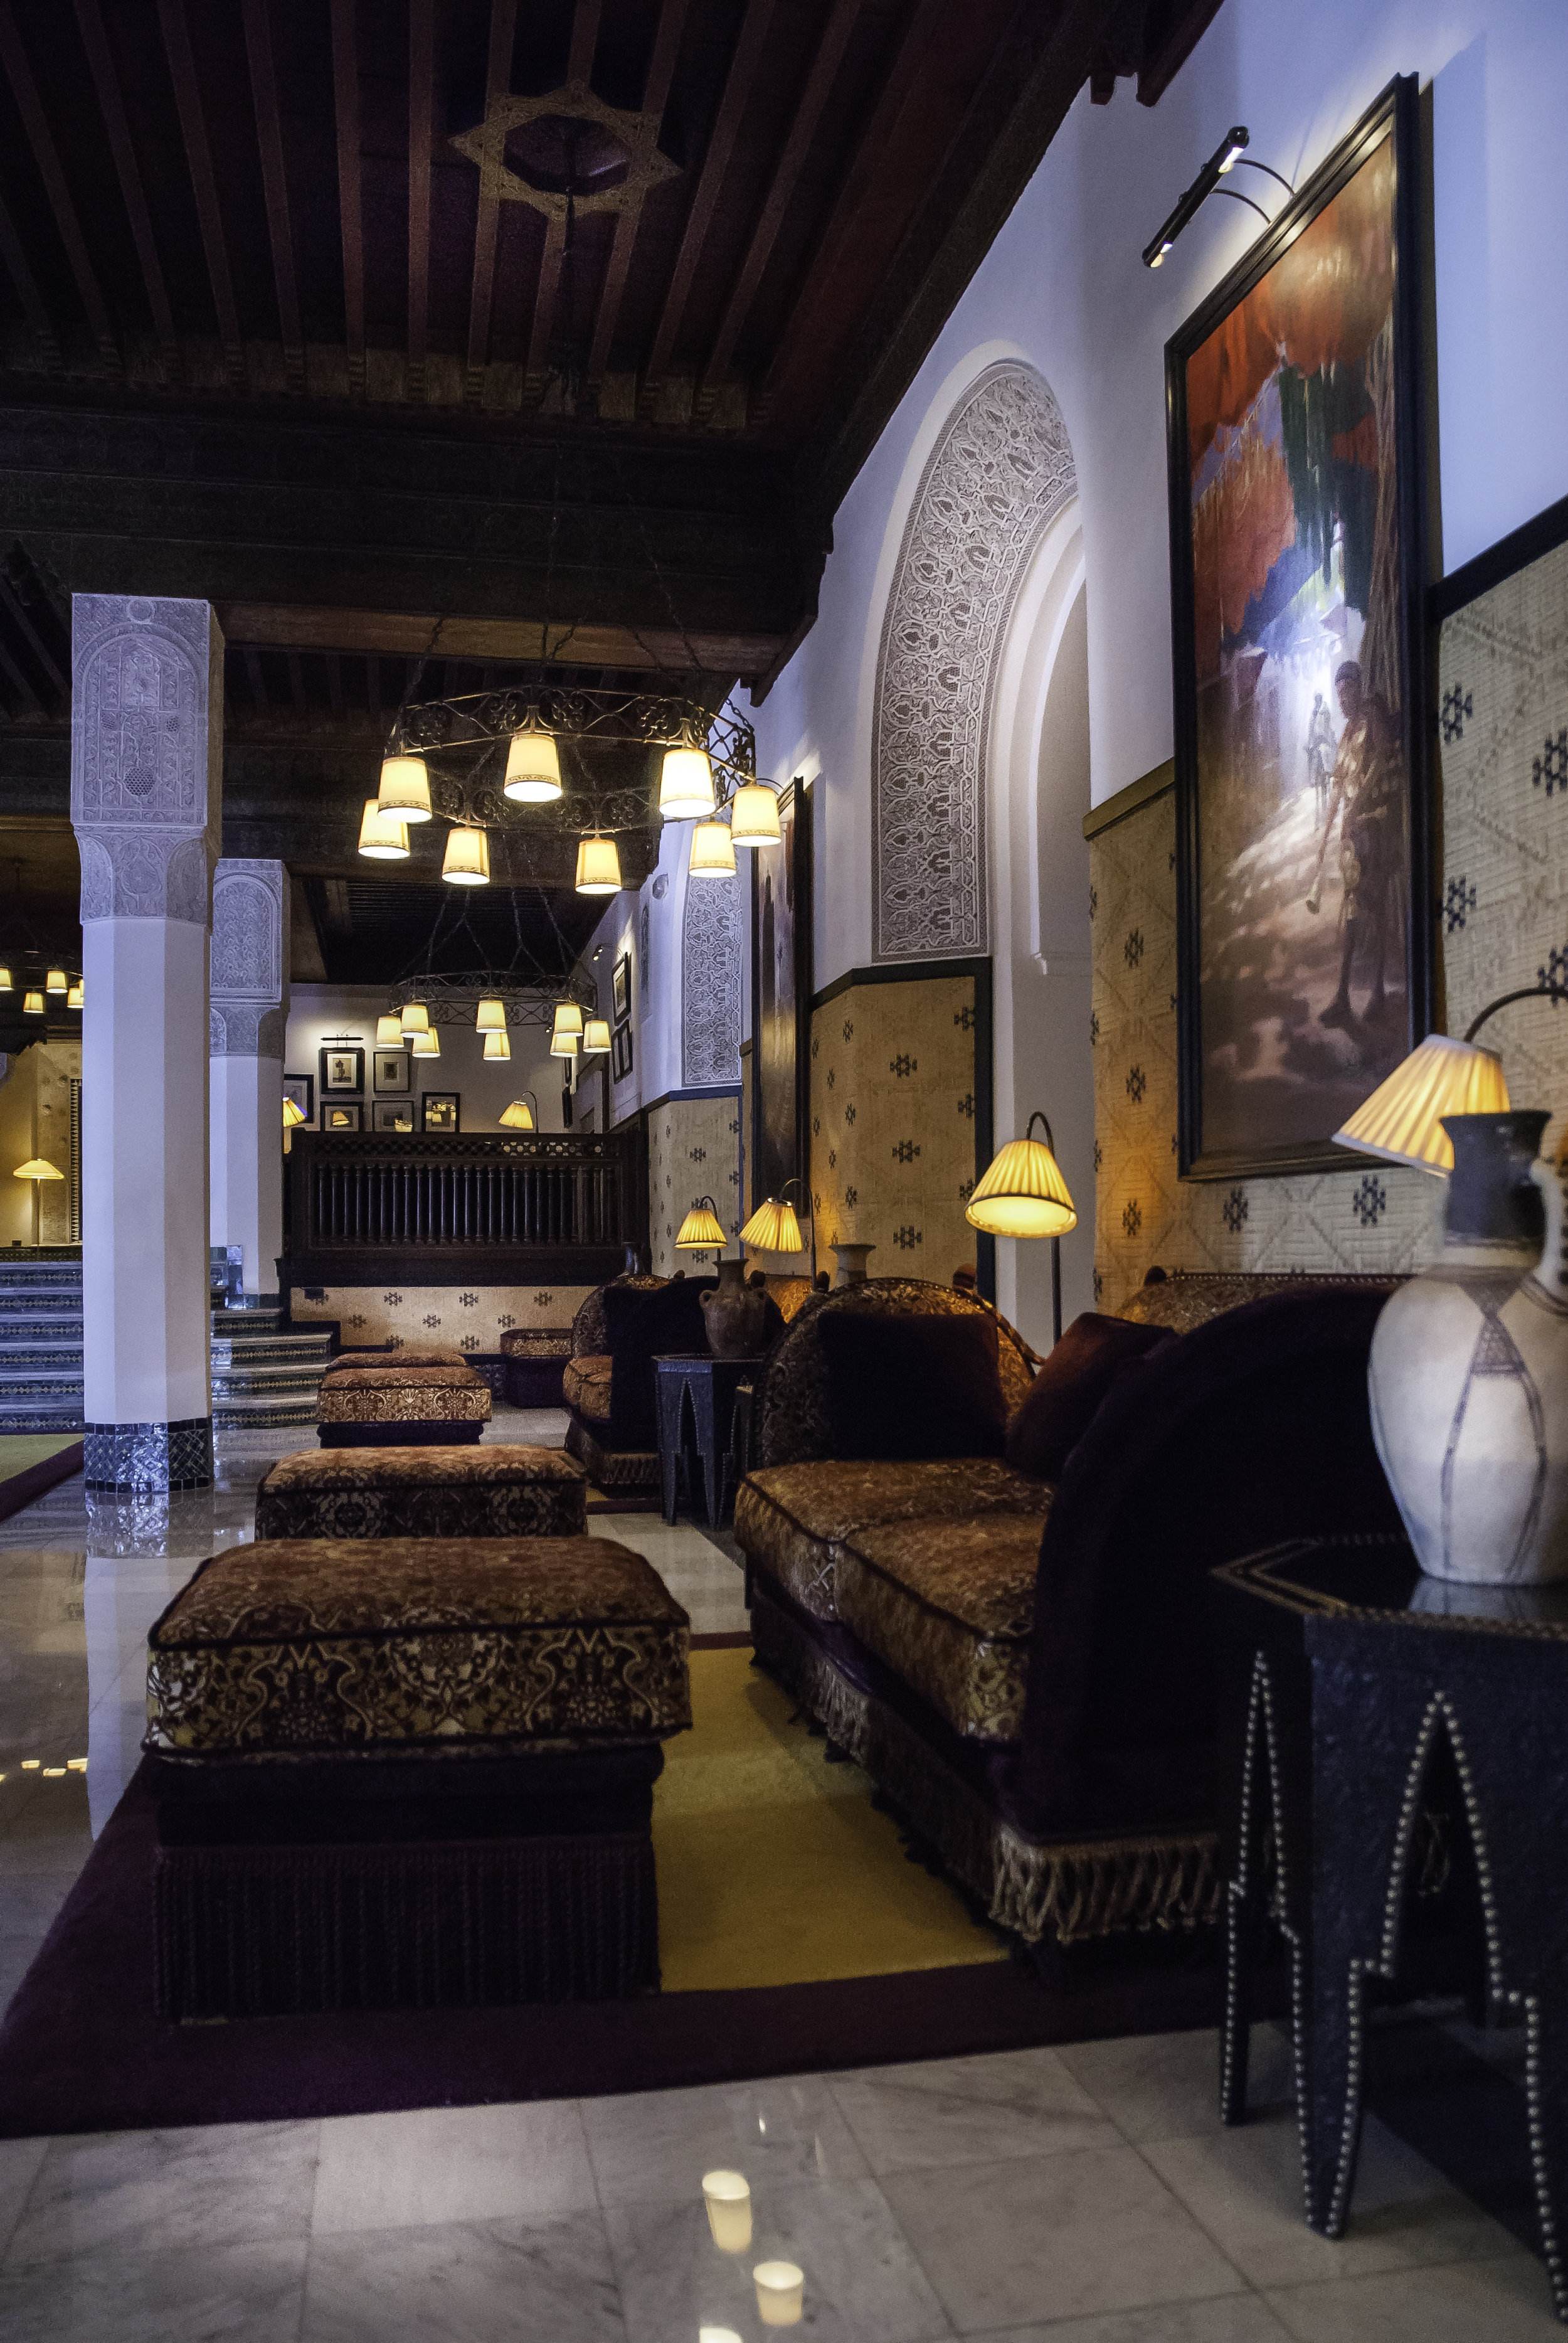 La Mamounia Hotel in Marrakech, Morocco